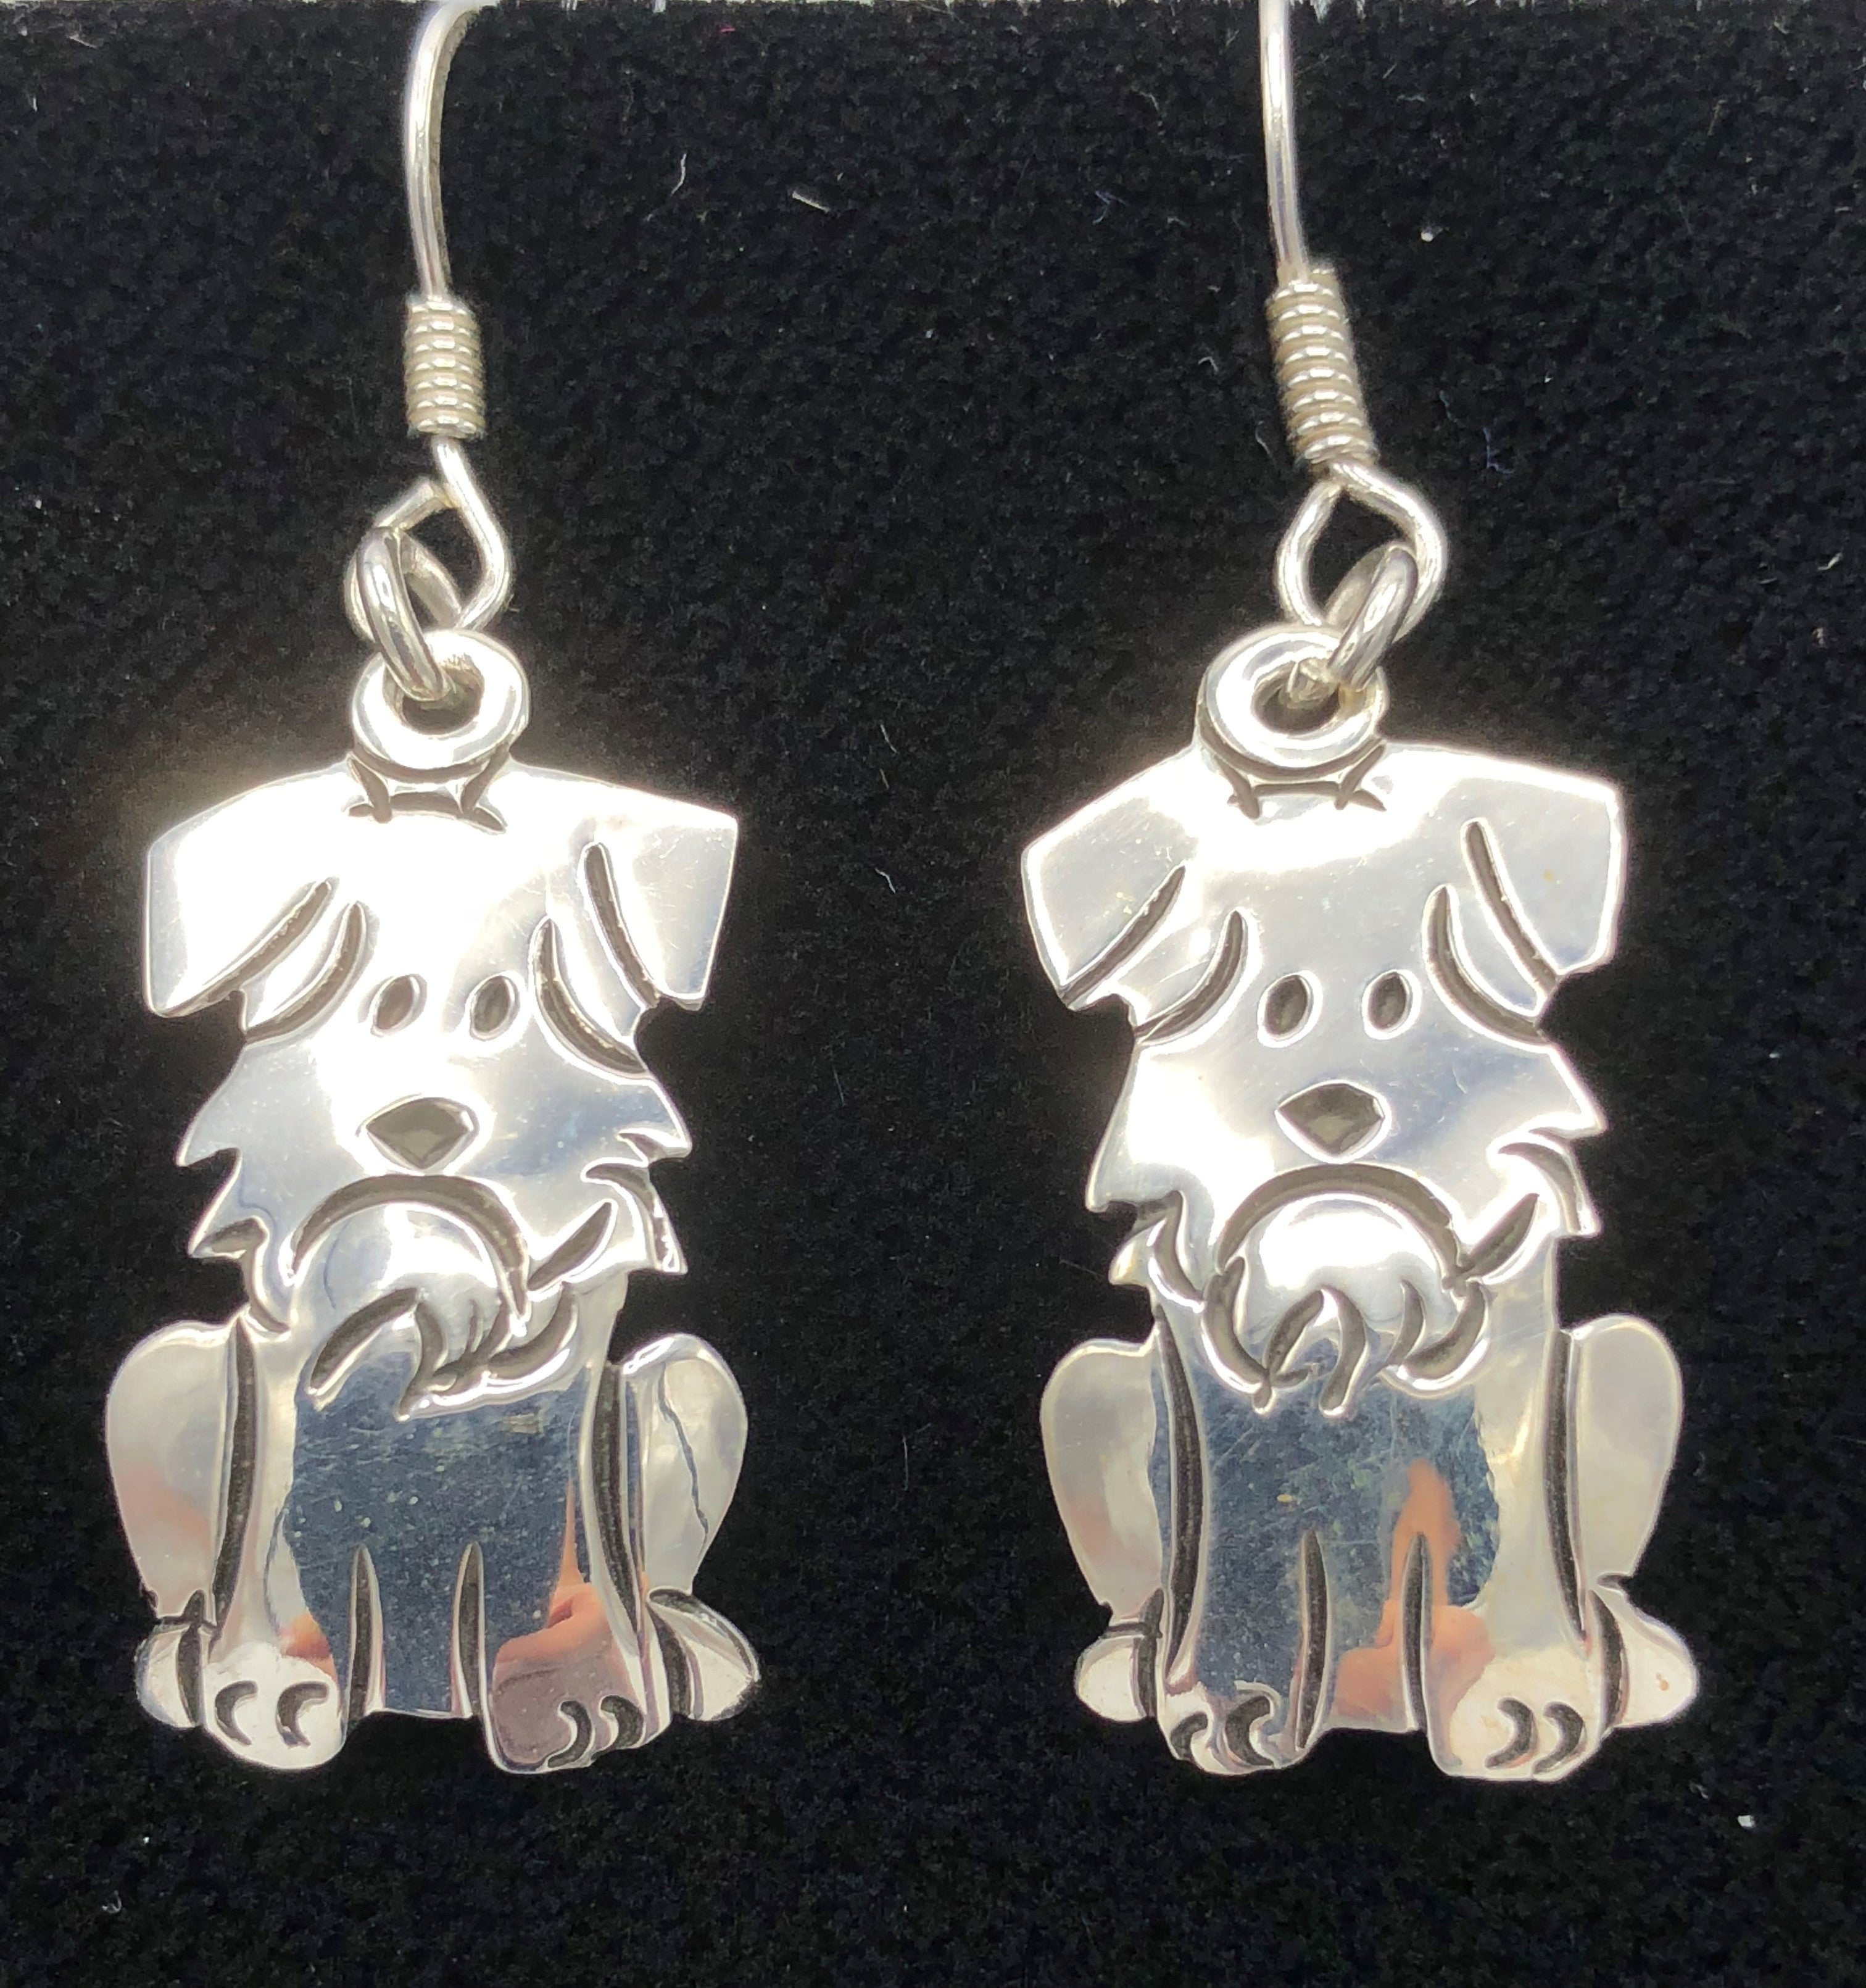 Dog sterling silver earrings